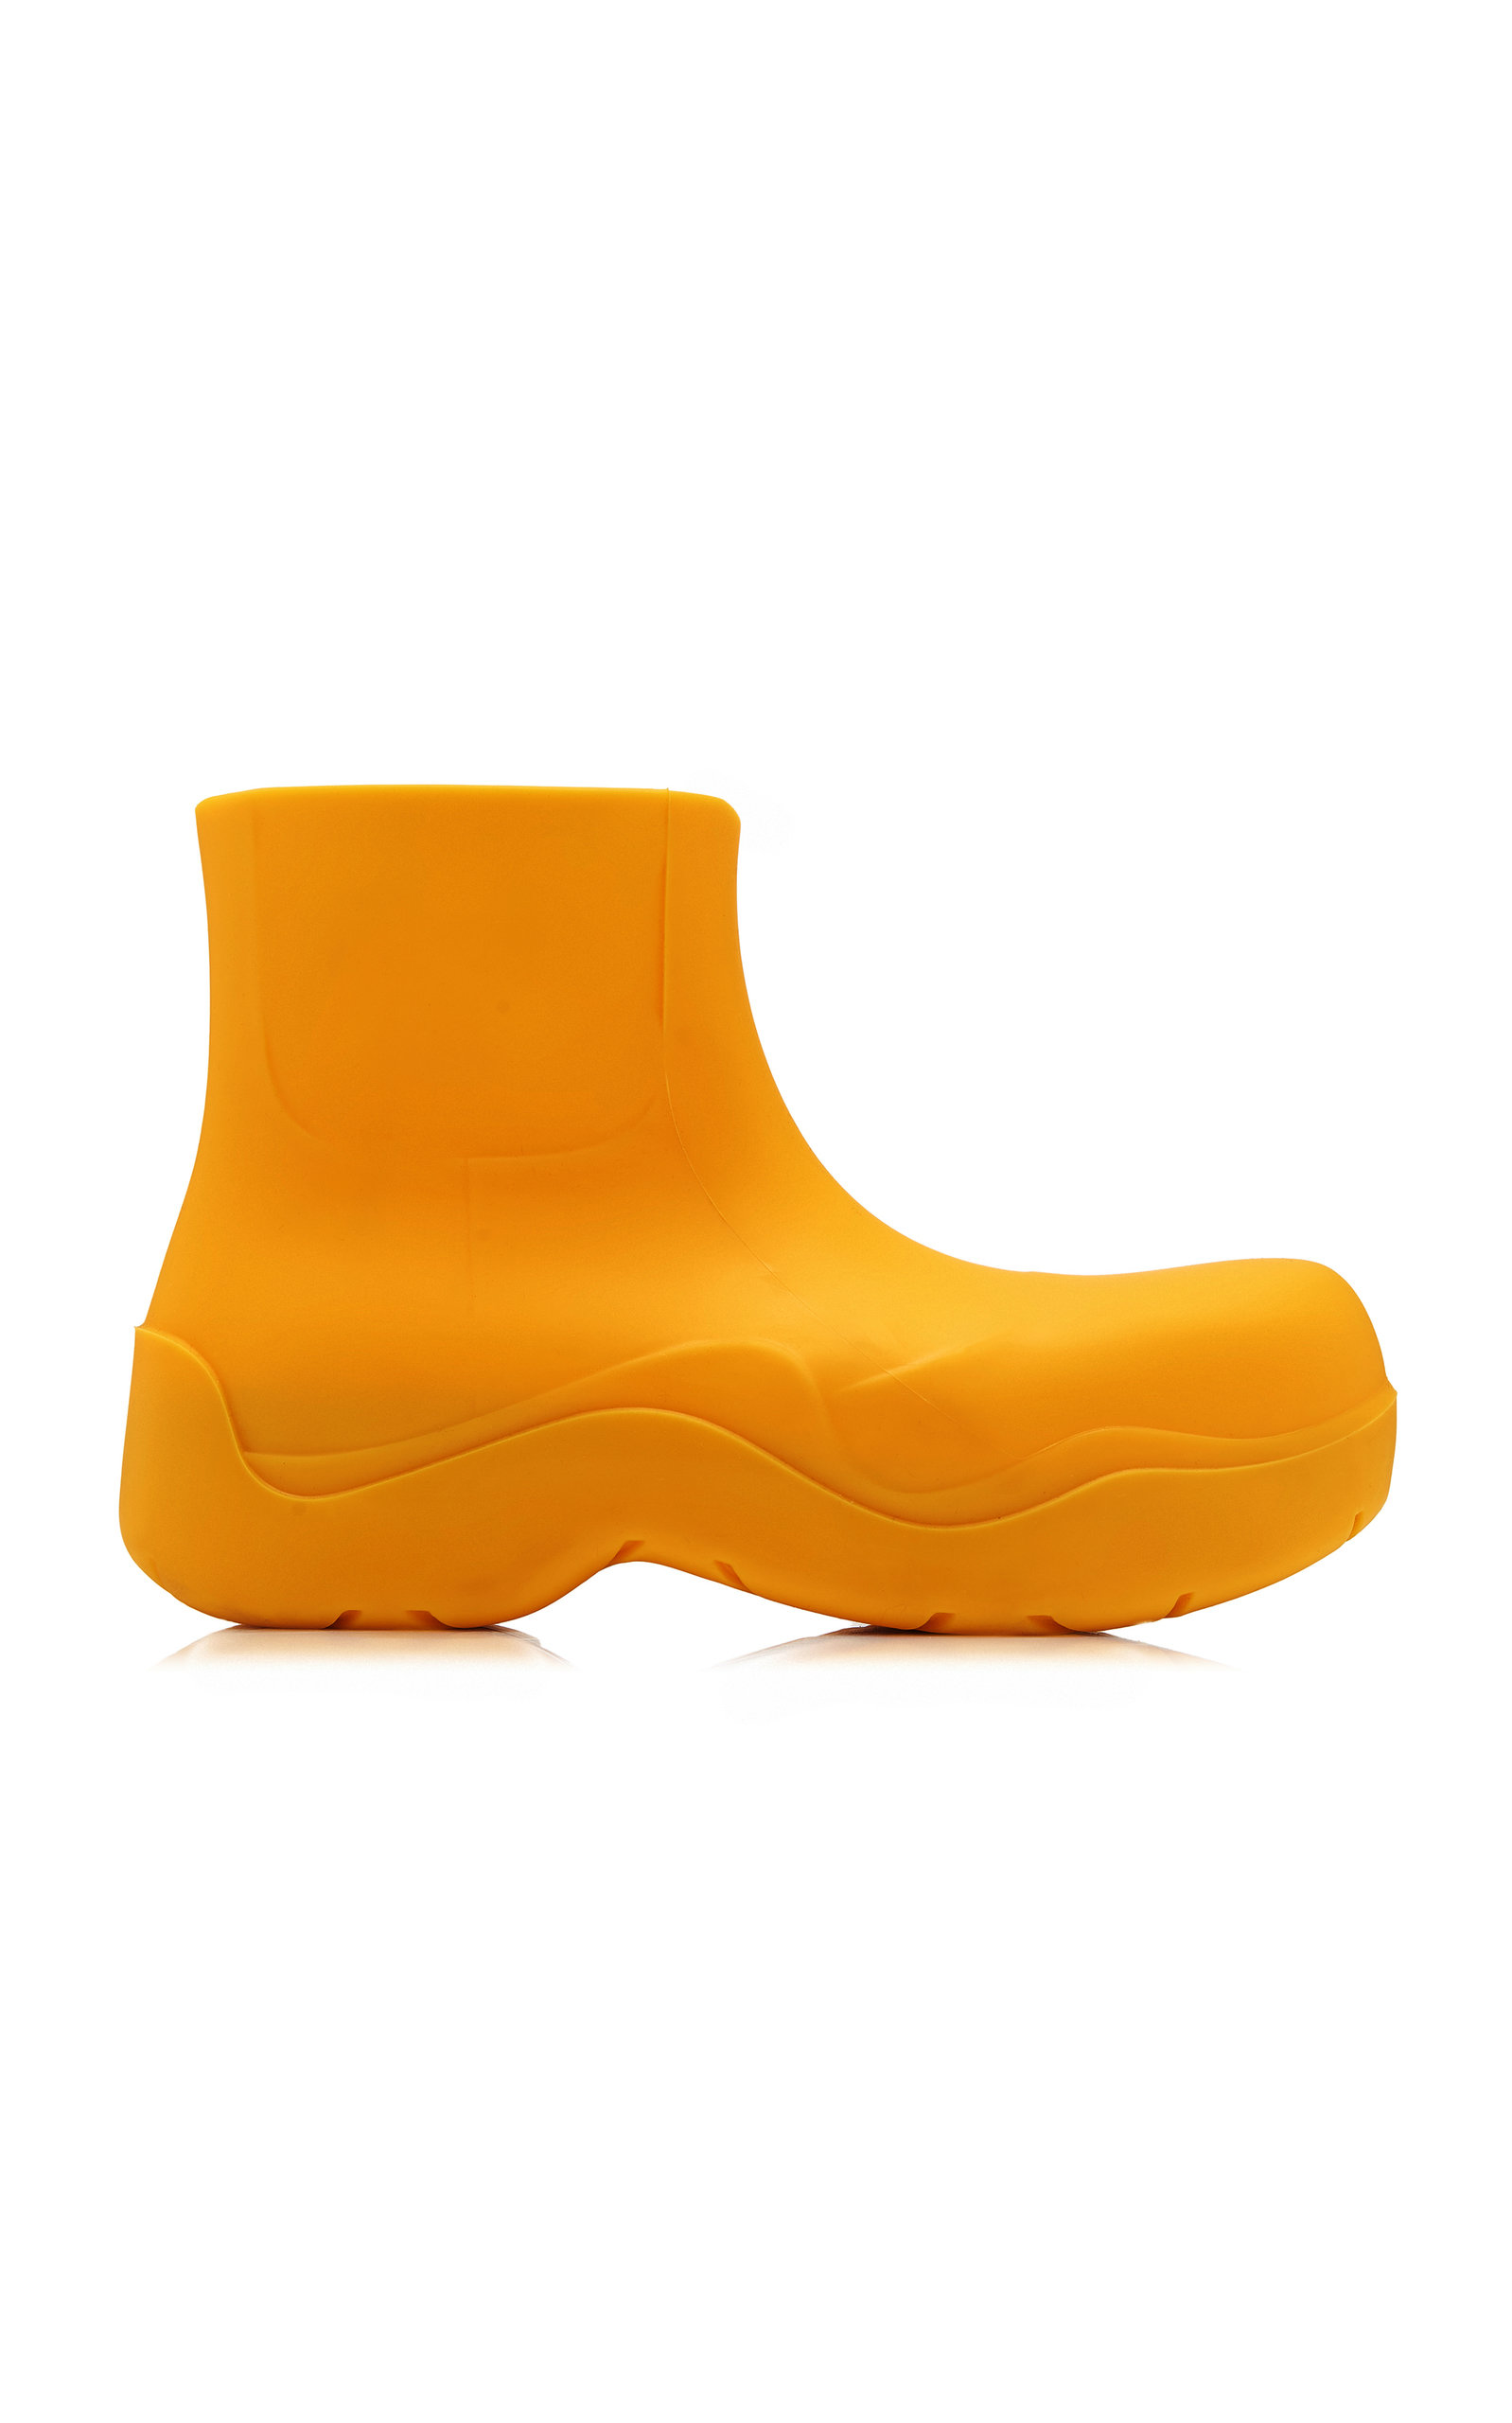 Bottega Veneta - Women's Puddle Boots - Orange - Moda Operandi